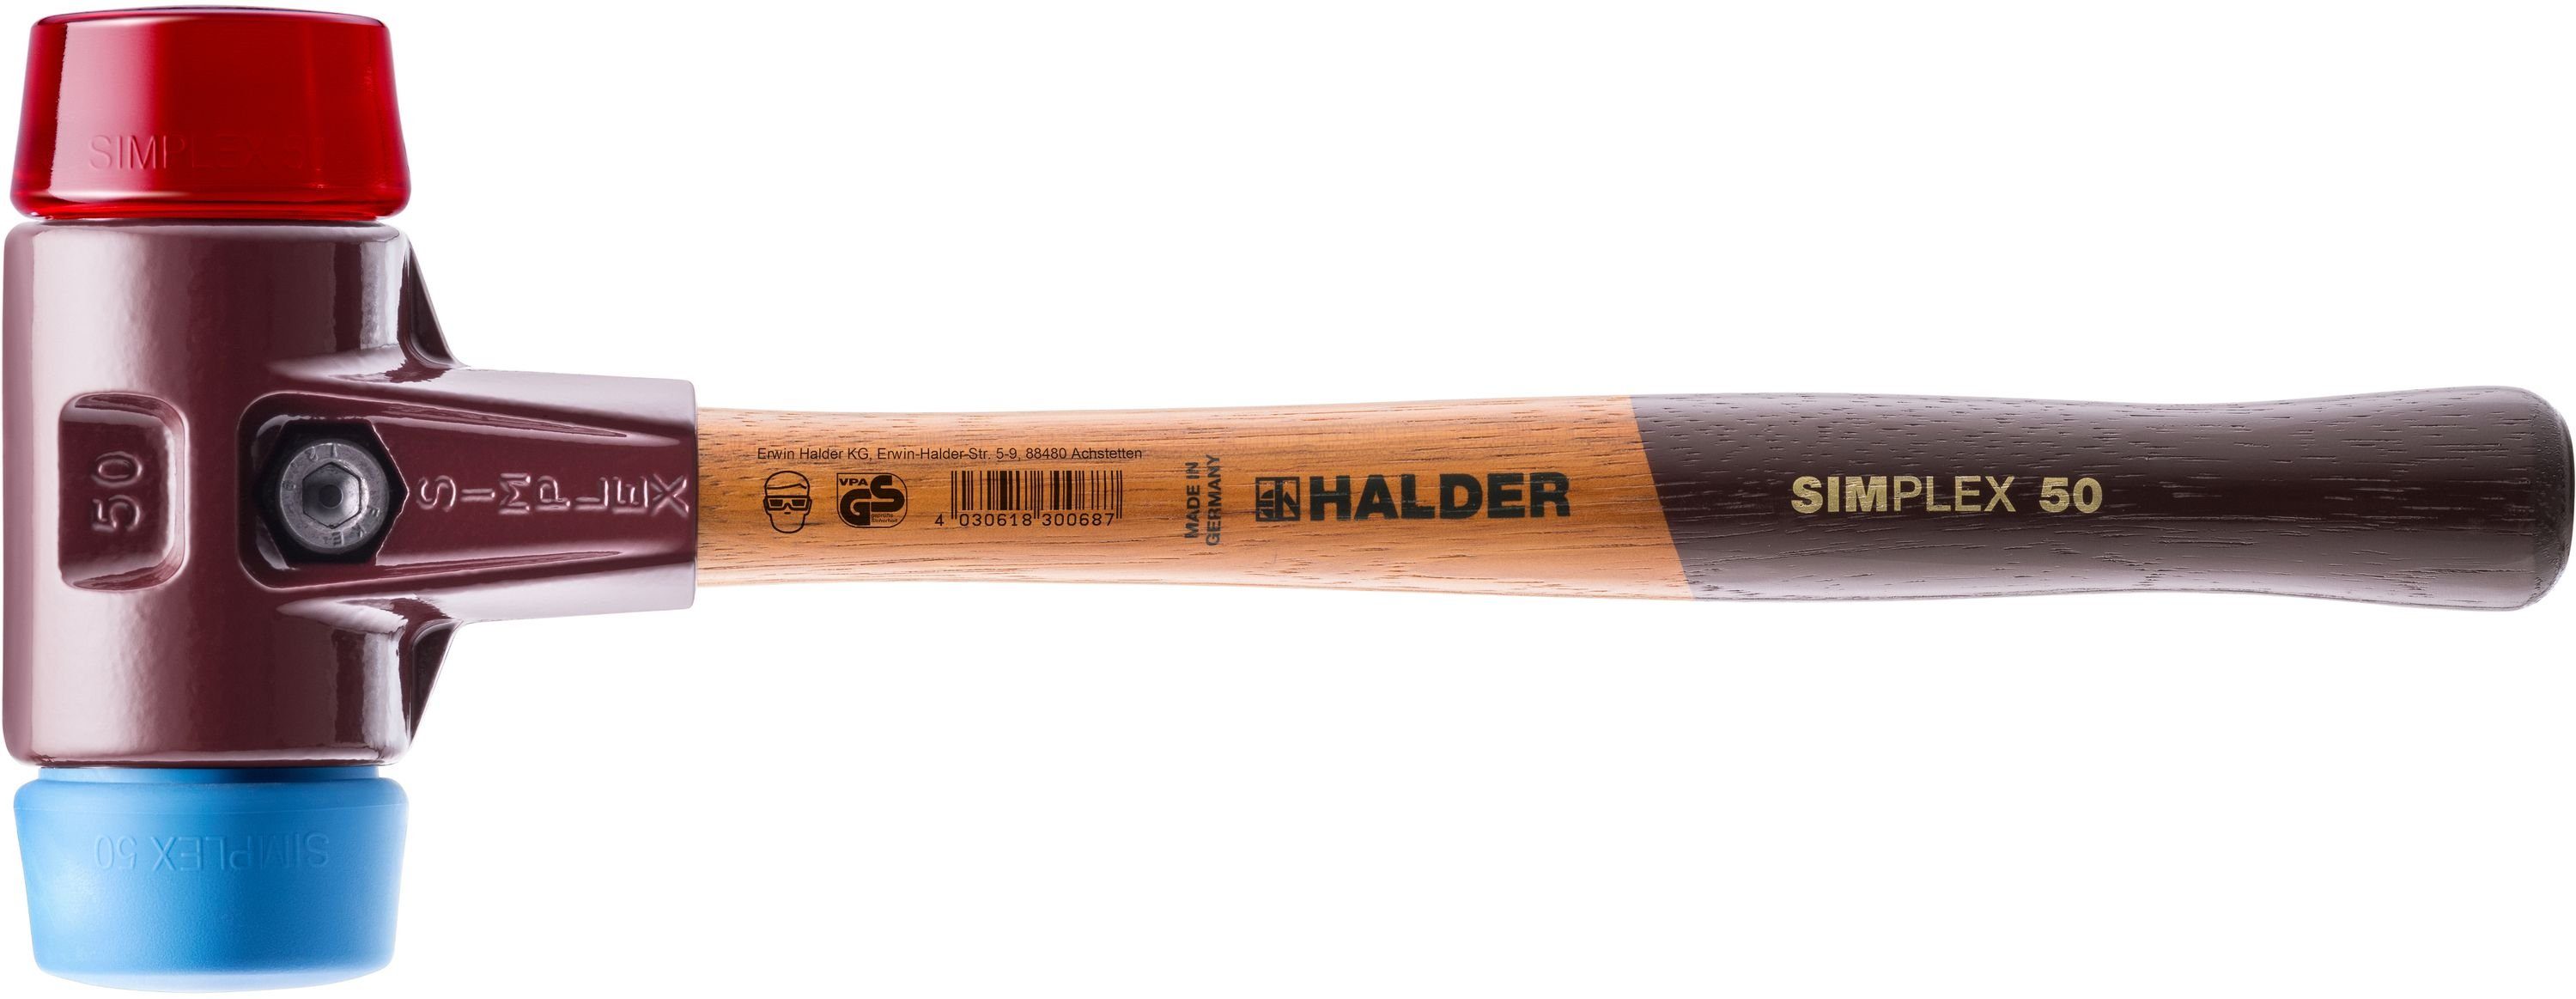 Halder KG Hammer SIMPLEX-Schonhämmer, mit Stahlgussgehäuse und Holzstiel Ø=40 mm